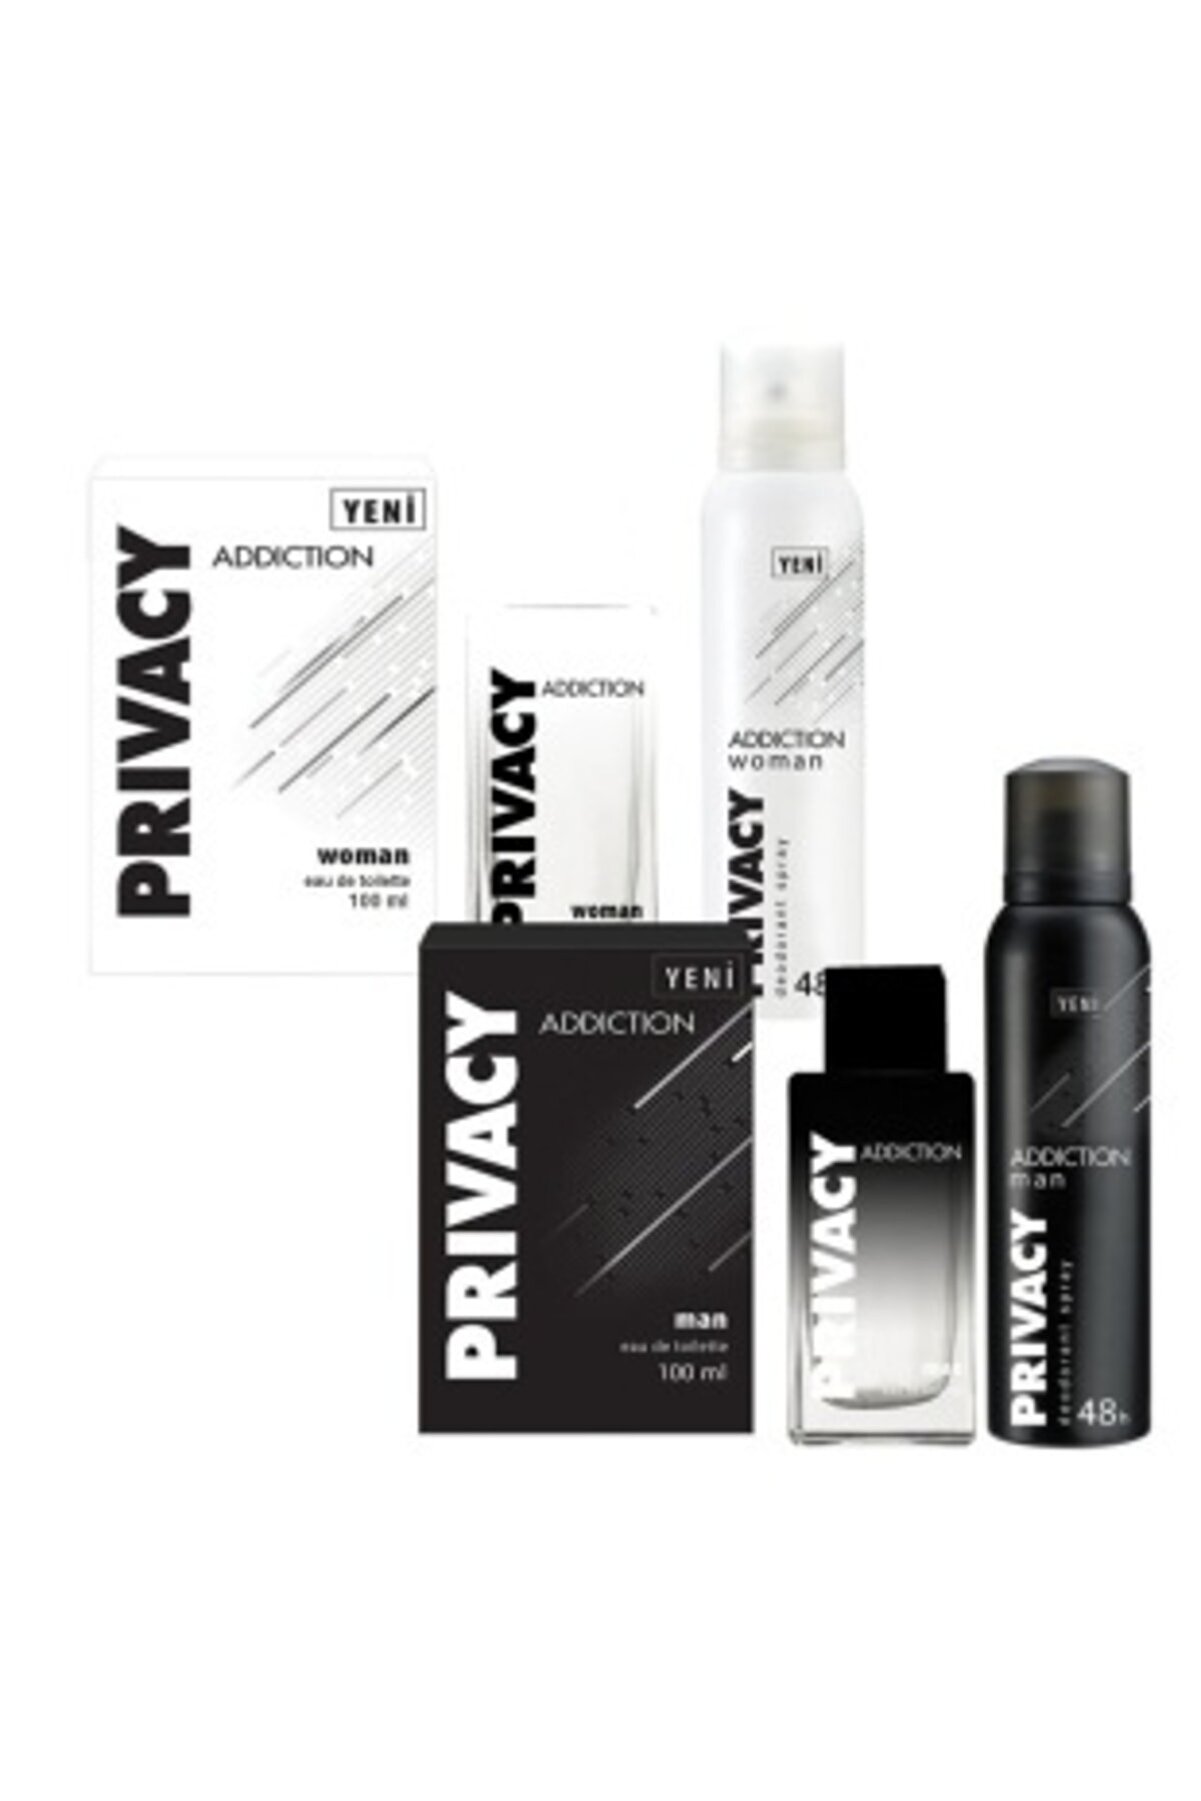 Privacy Woman Addiction Edt Parfüm 100ml+deodorant 150ml Ve Addiction Erkek Edt Parfüm+Deodorant